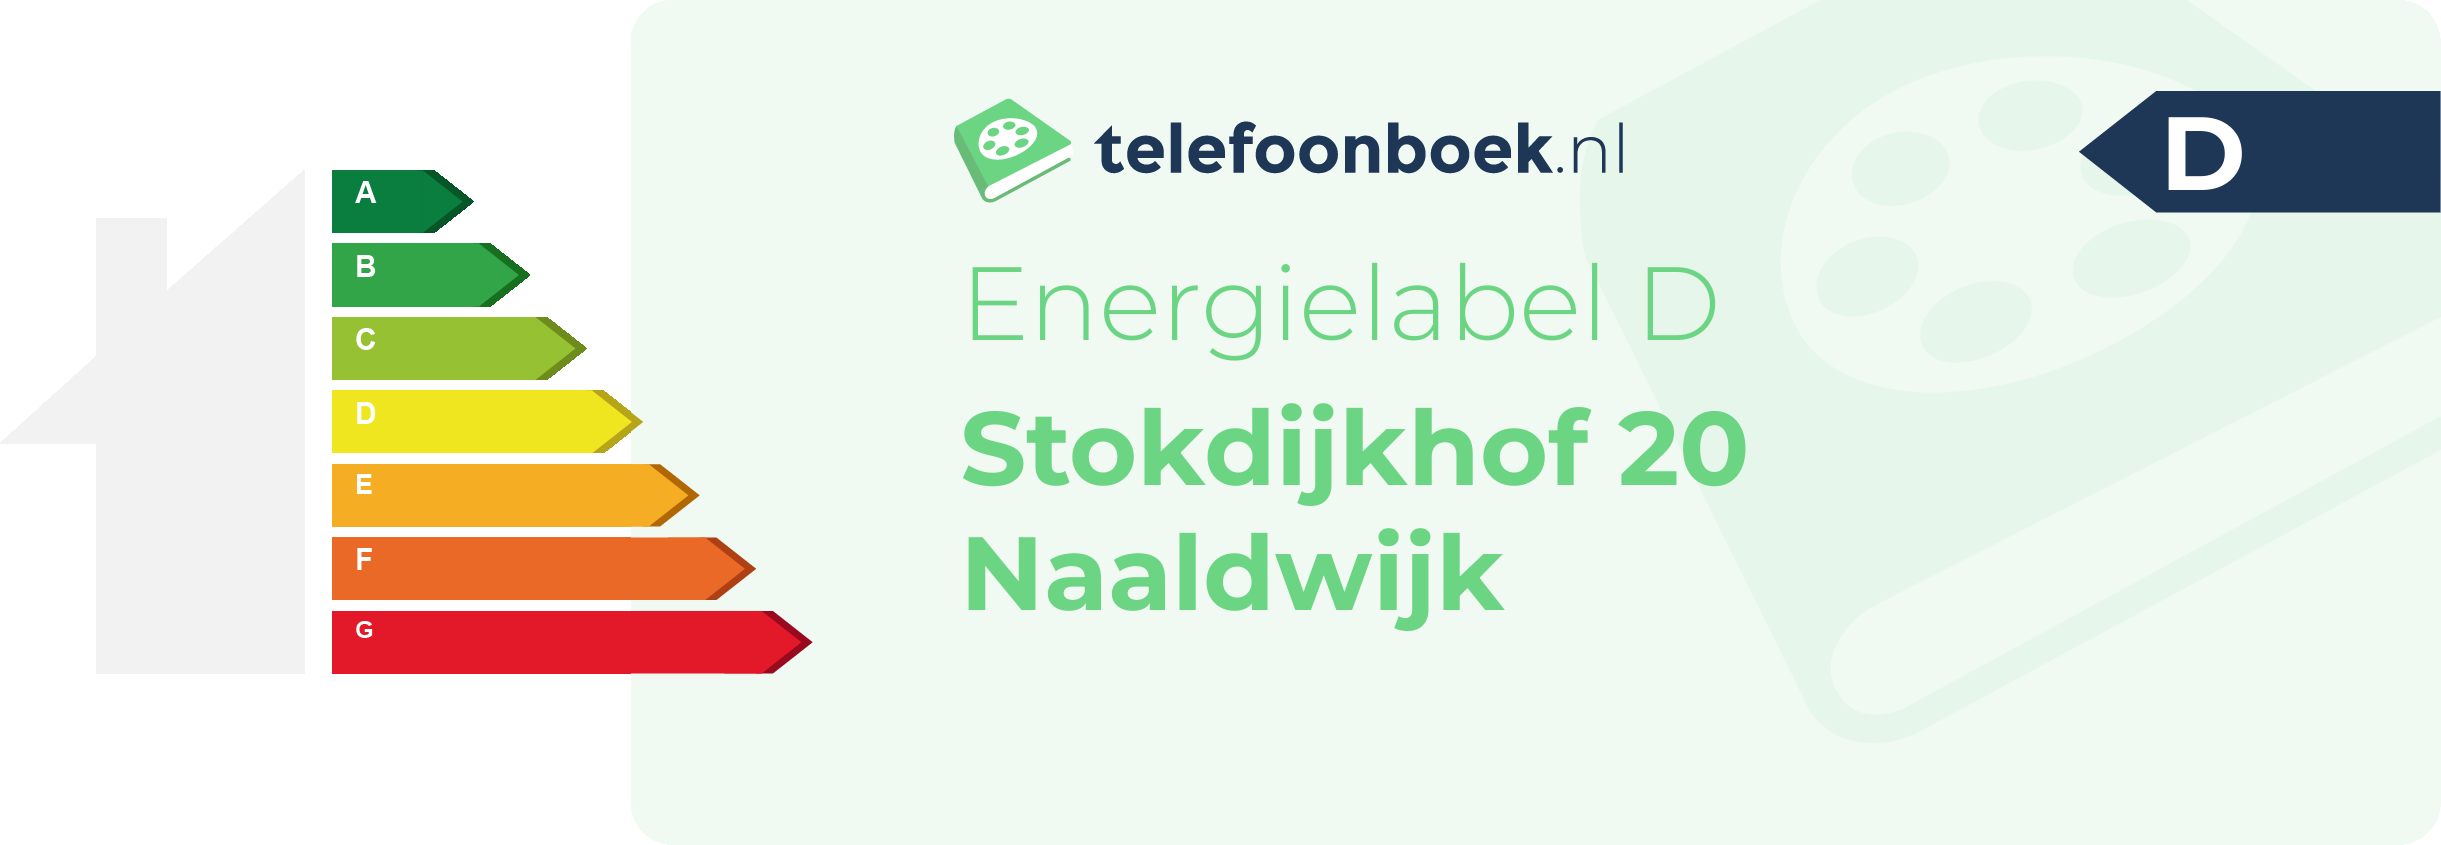 Energielabel Stokdijkhof 20 Naaldwijk